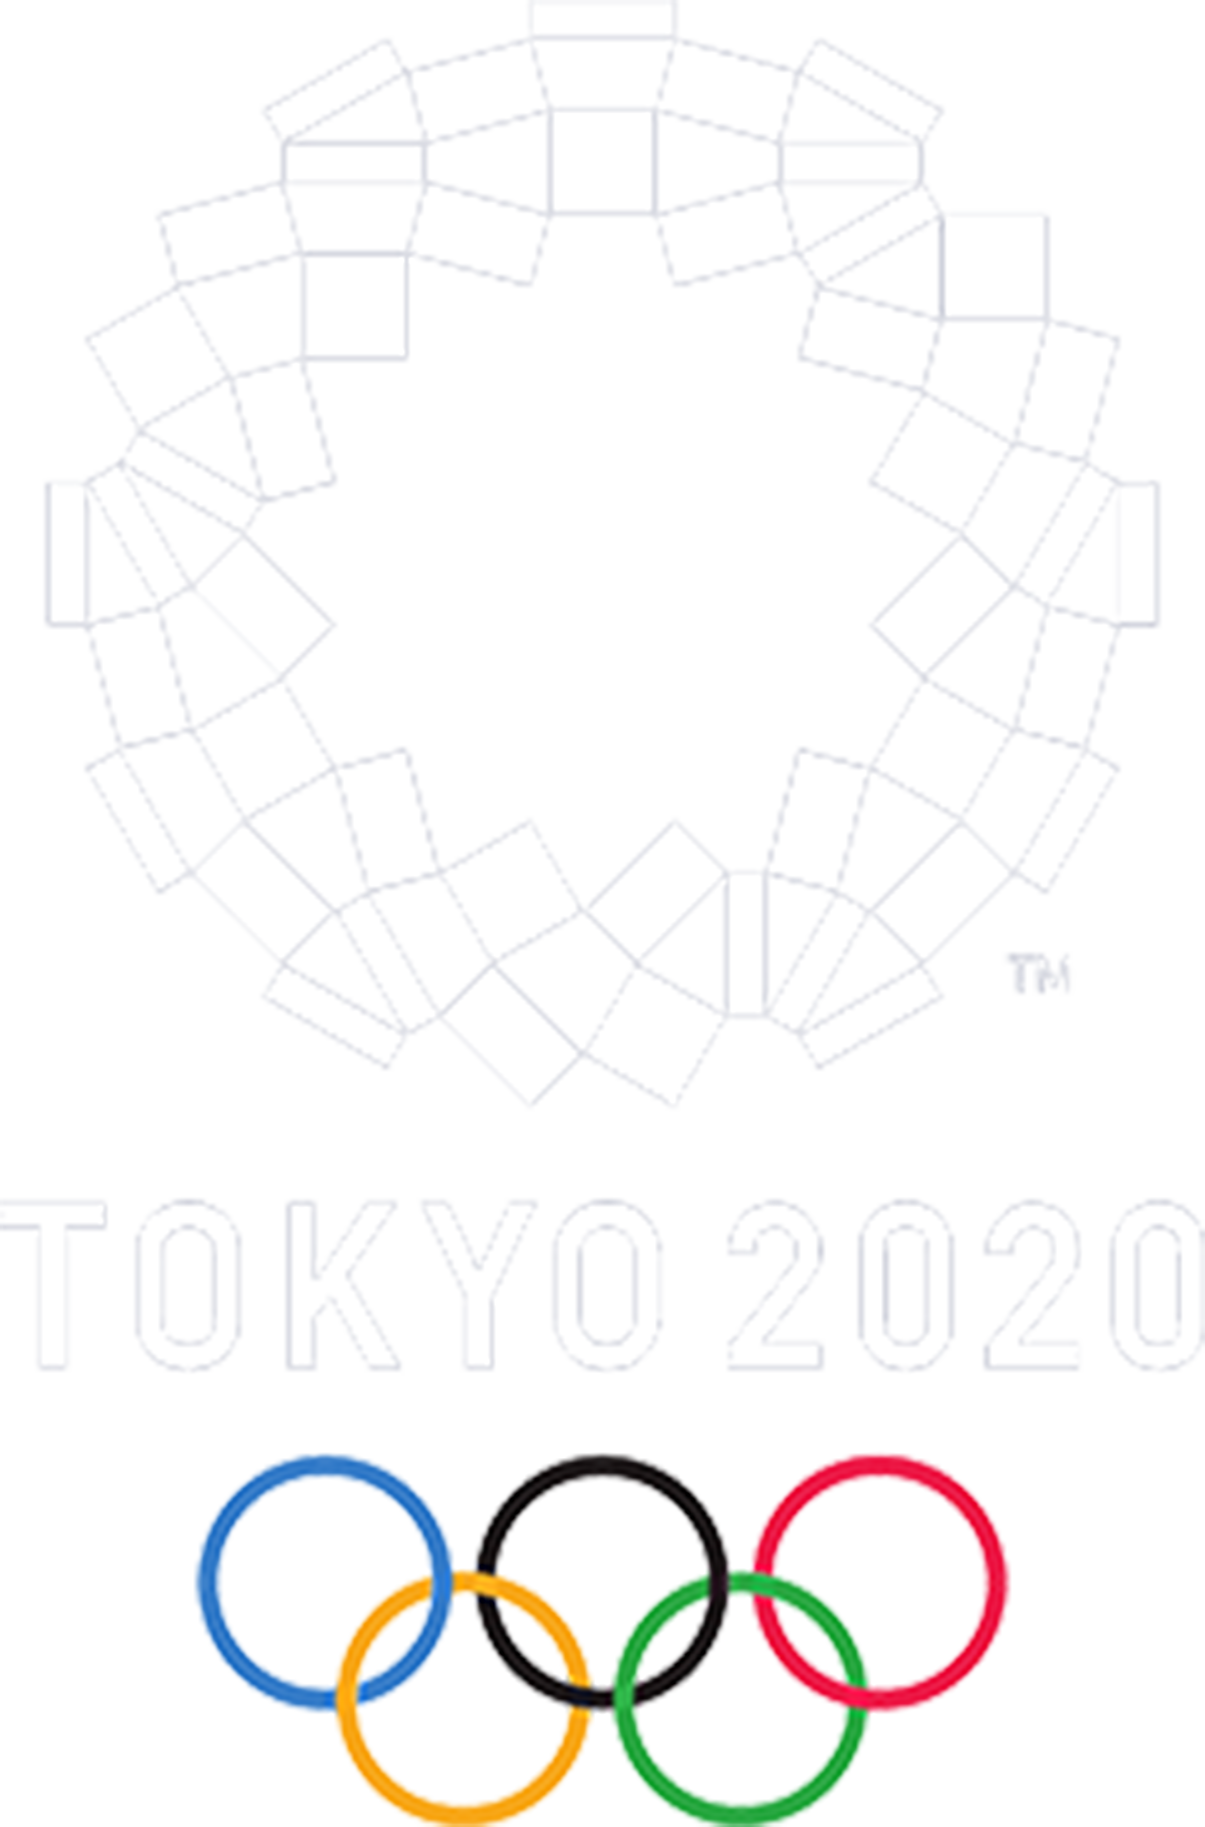 olympics_logo